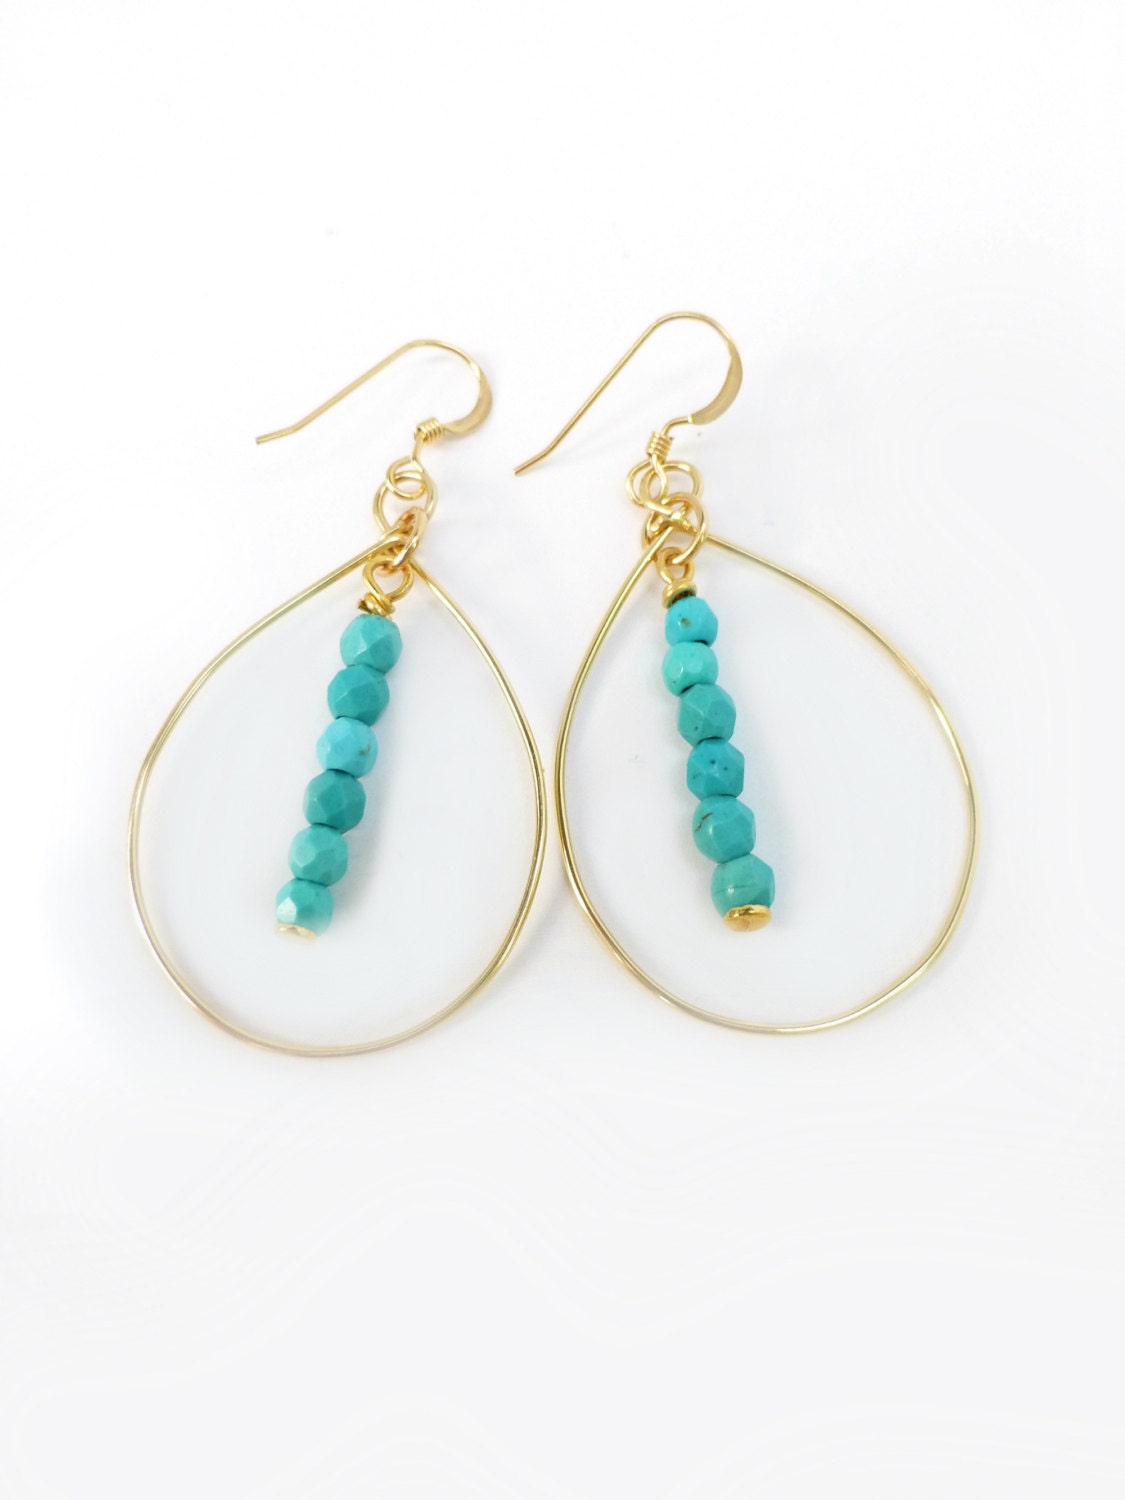 Turquoise Hoop Earrings Turquoise Dangle Earrings Genuine | Etsy